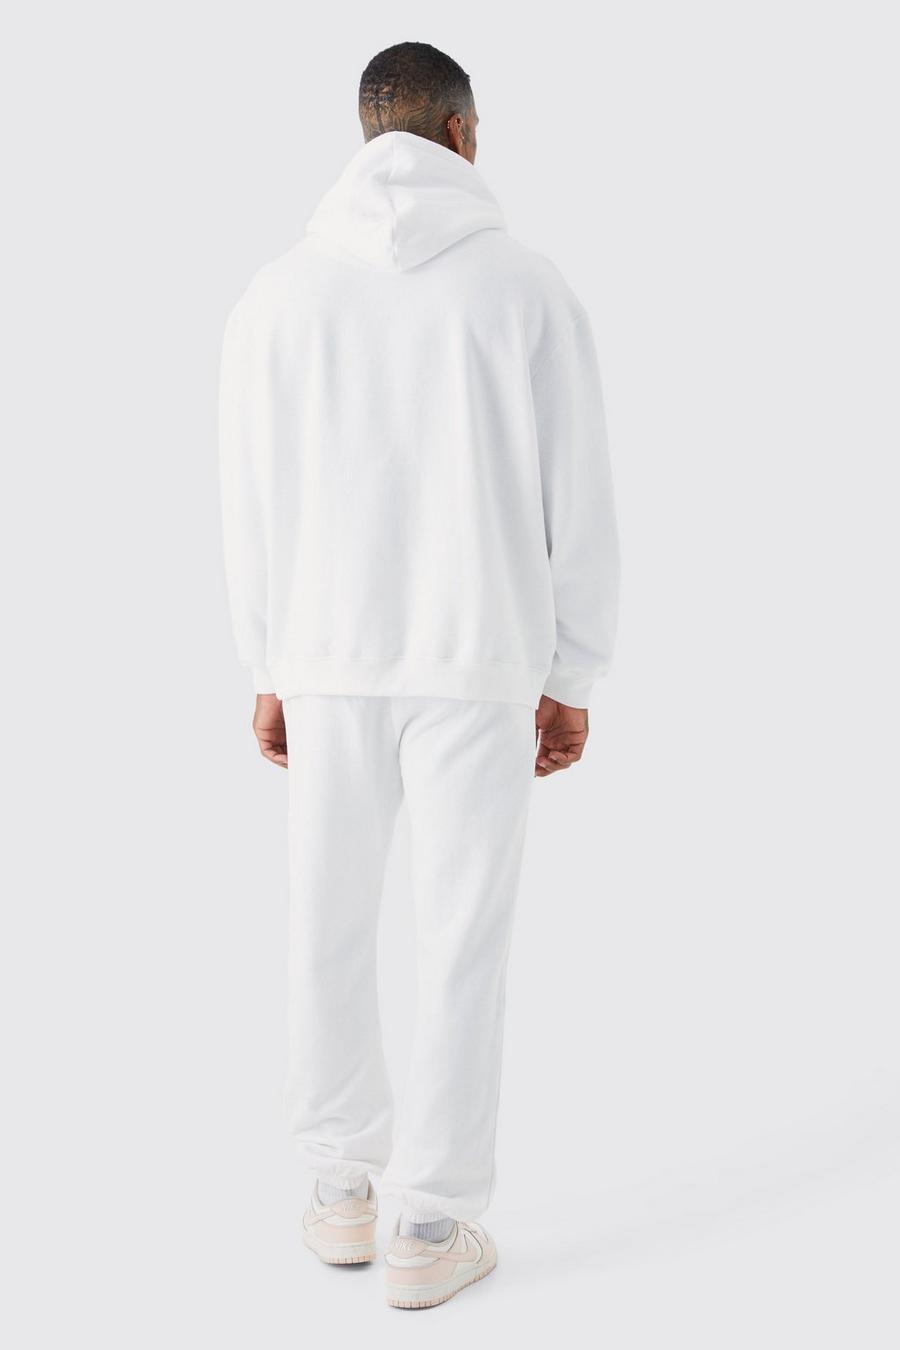 białe spodnie dresowe ściągacze nadruk